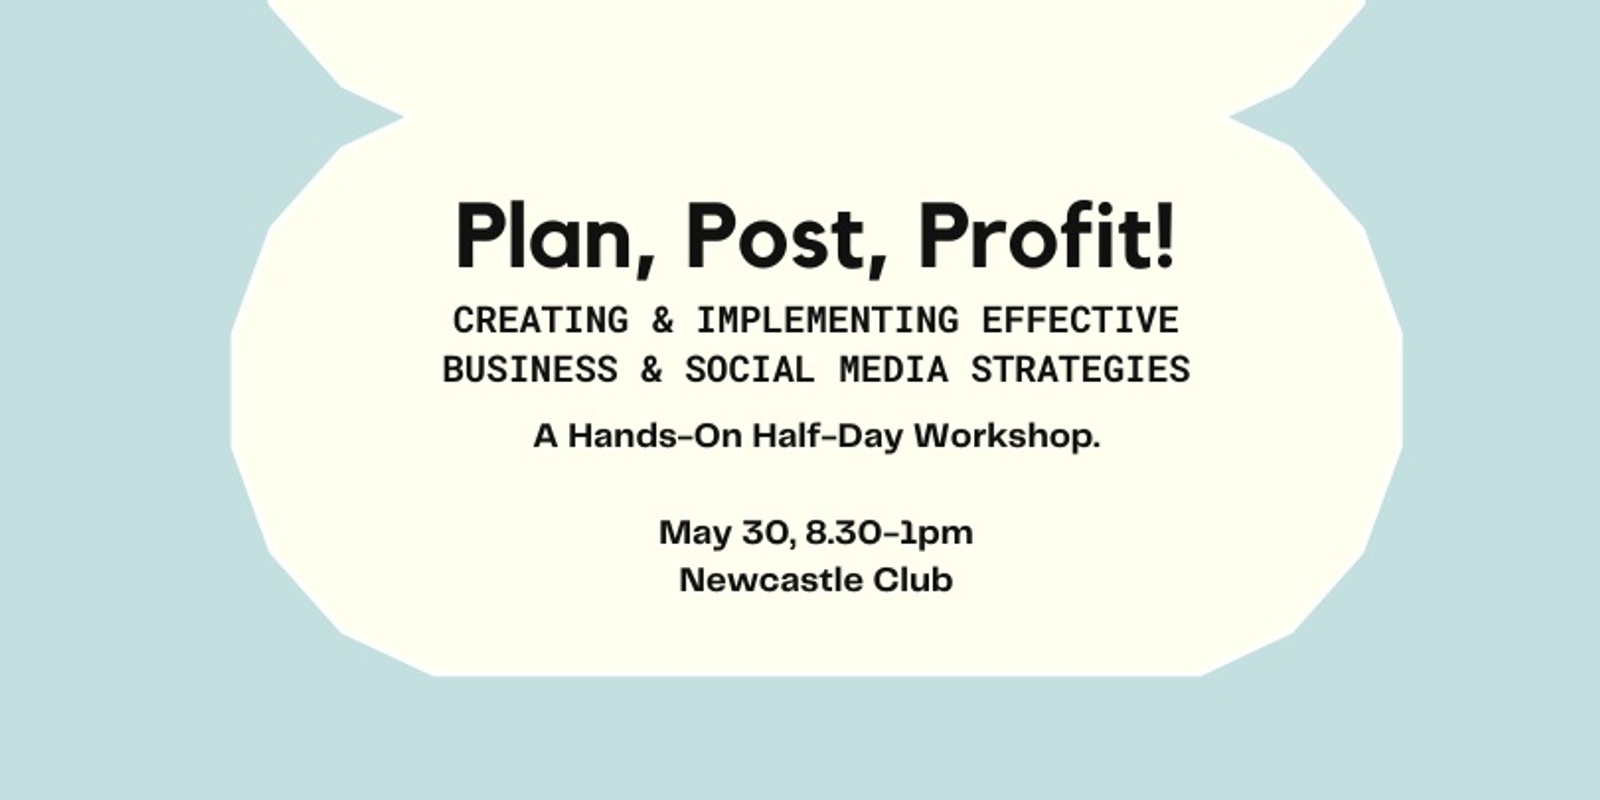 Banner image for Plan, Post, Profit! Hands-On Half-Day Workshop.